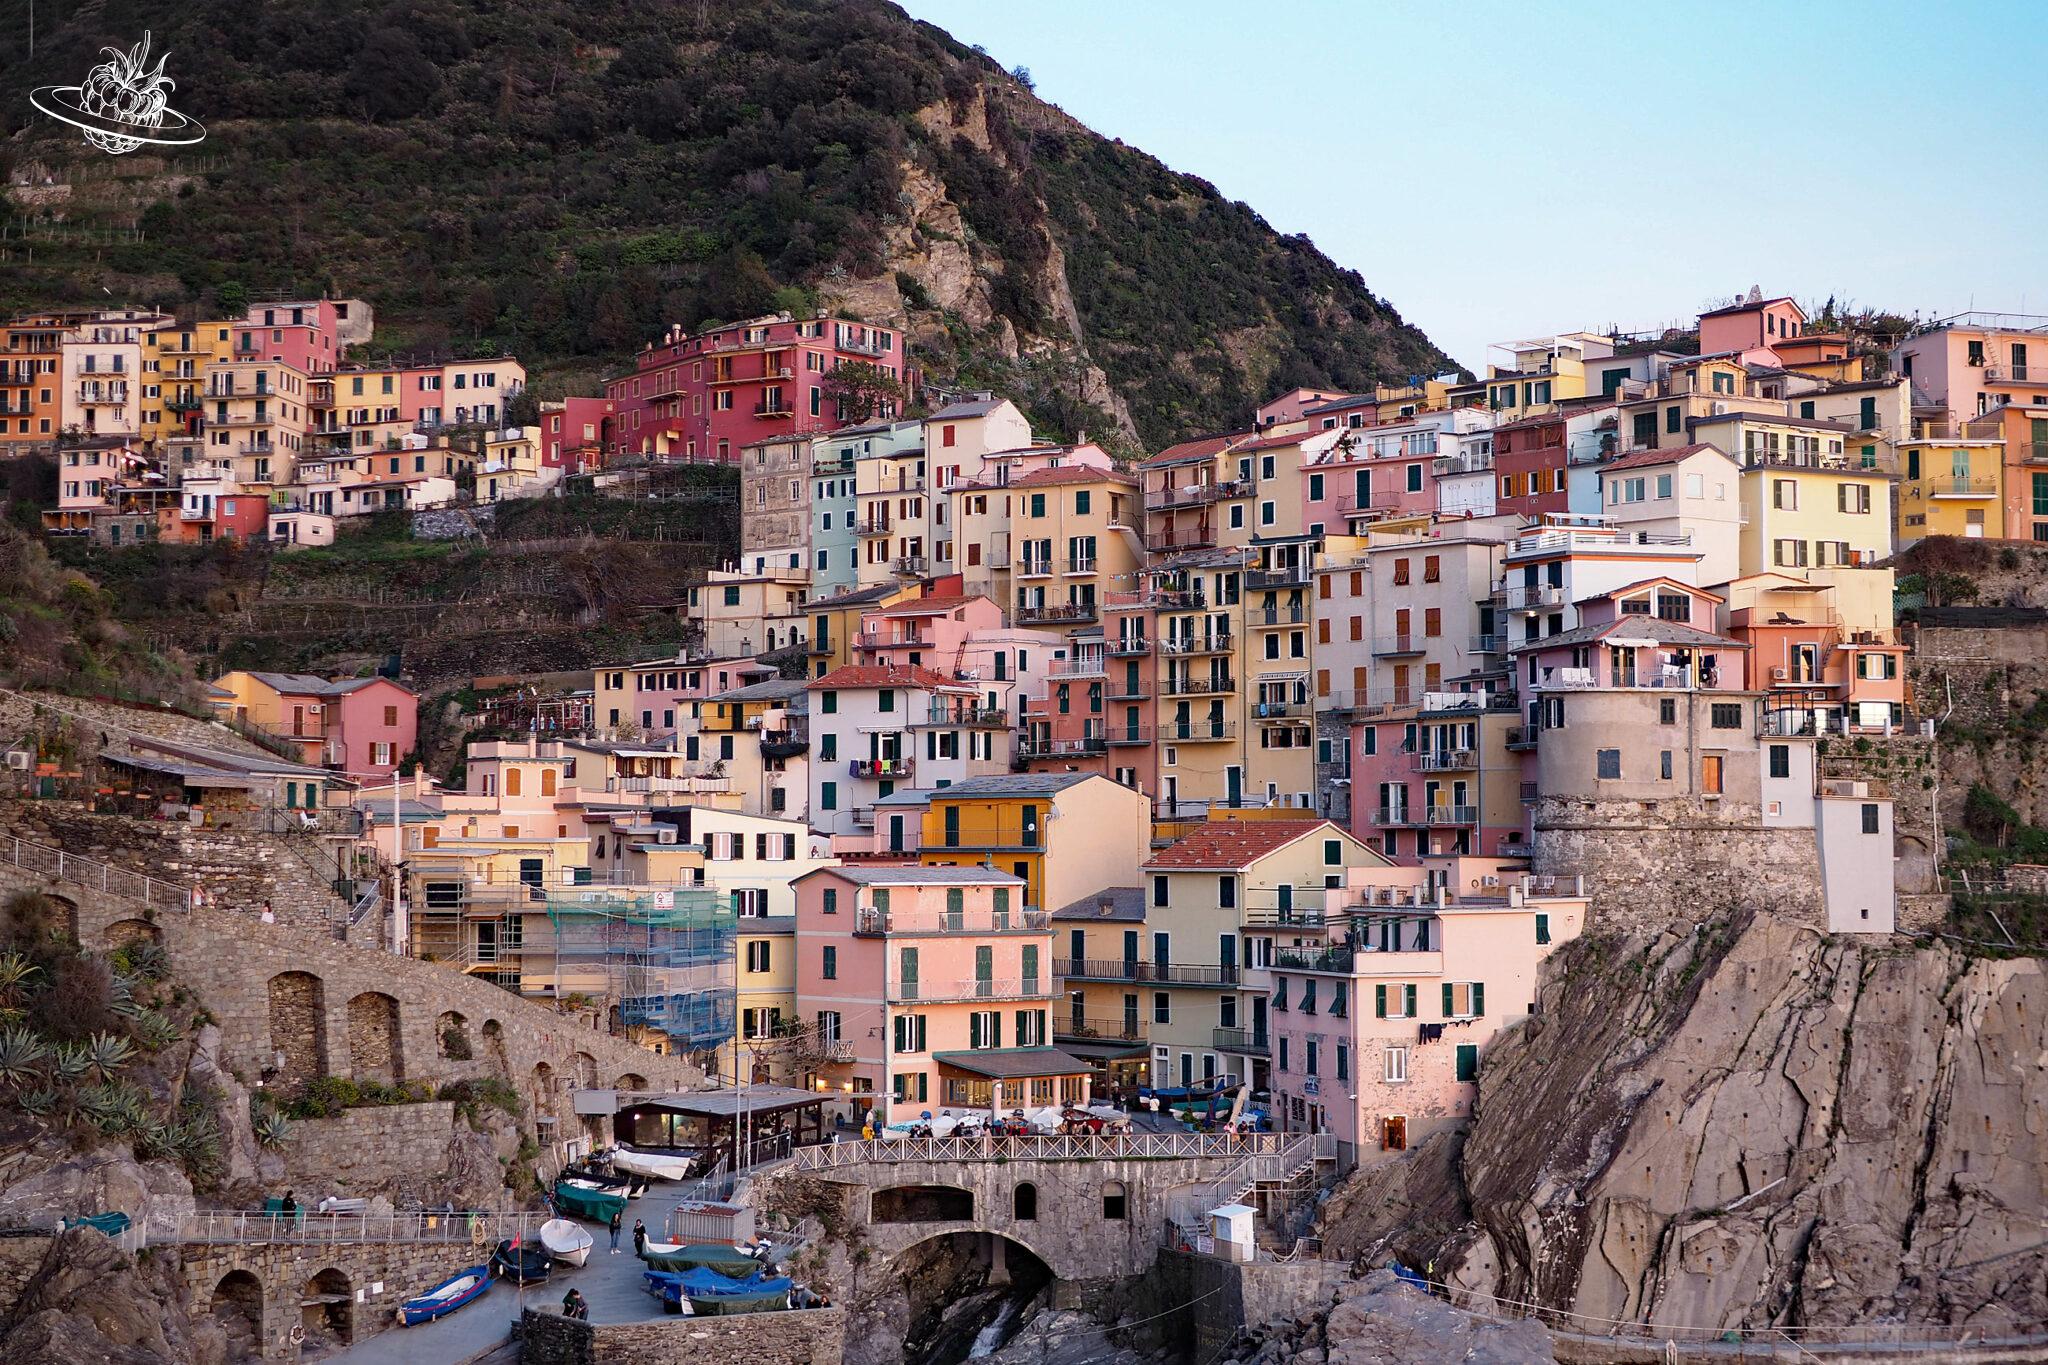 Reise-Tipp Cinque Terre: Ein Wochenendtrip in der Nebensaison